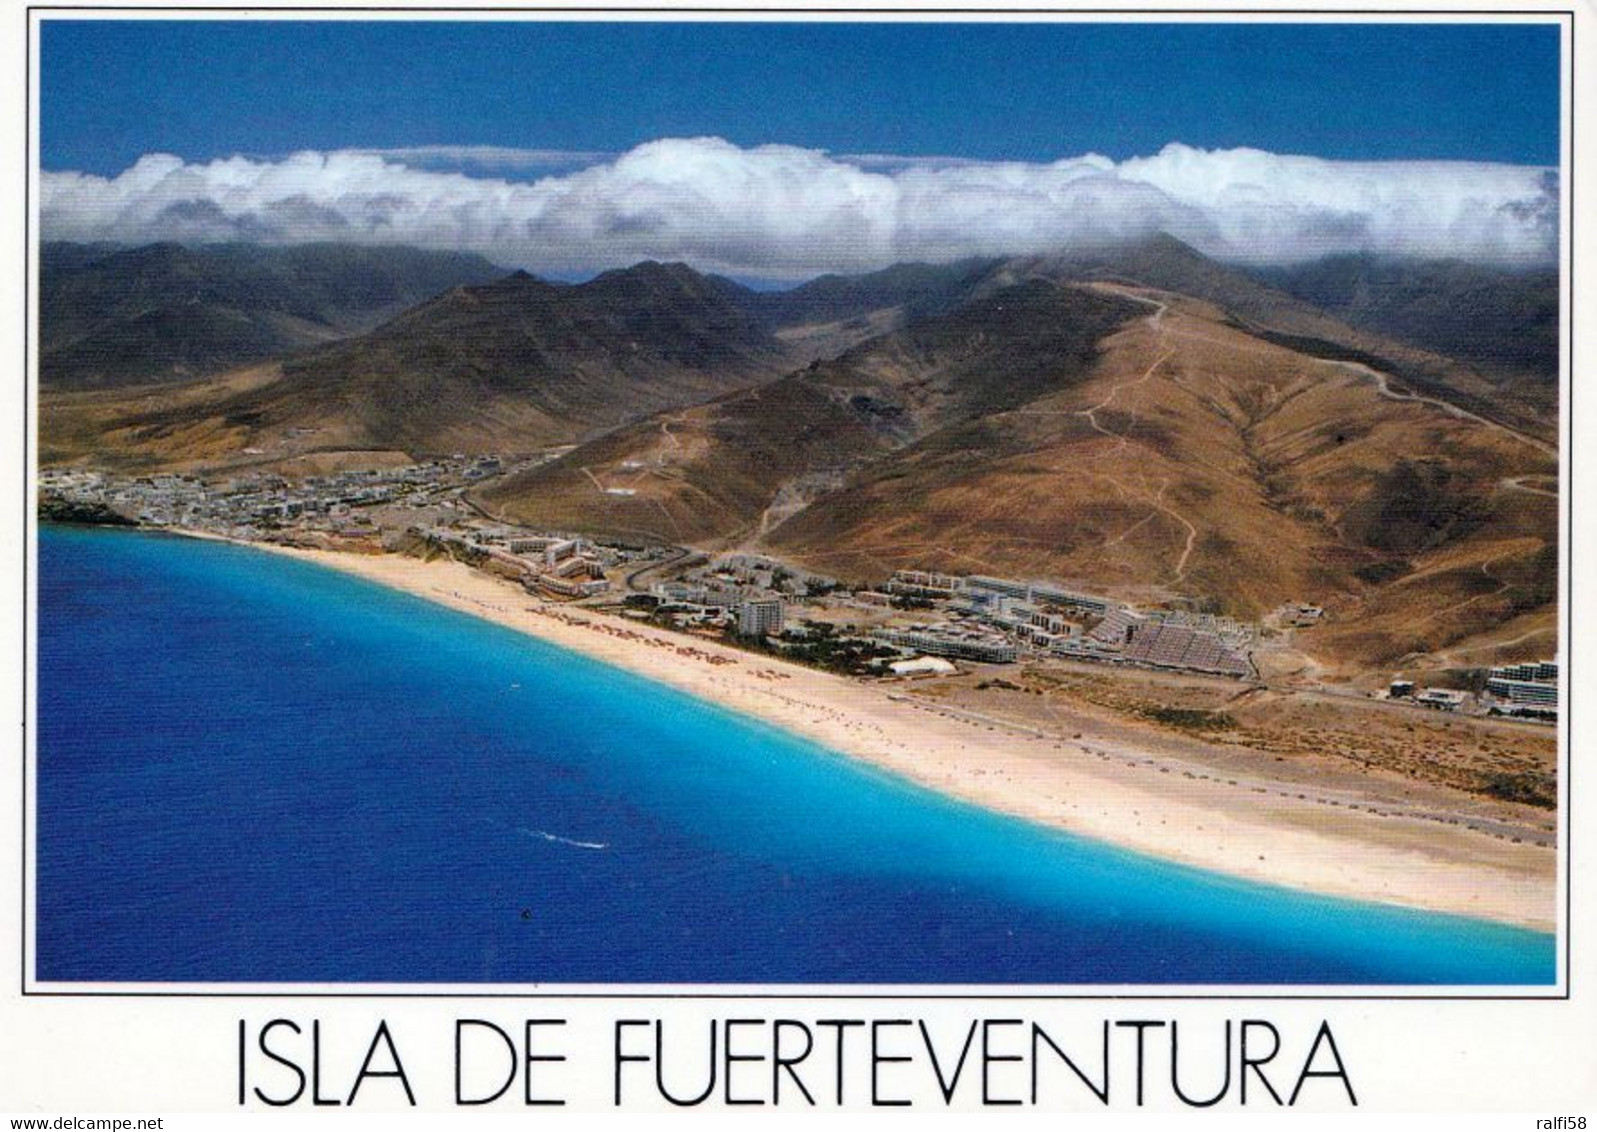 12 AK Insel Fuerteventura * Landschaften auf Fuerteventura *